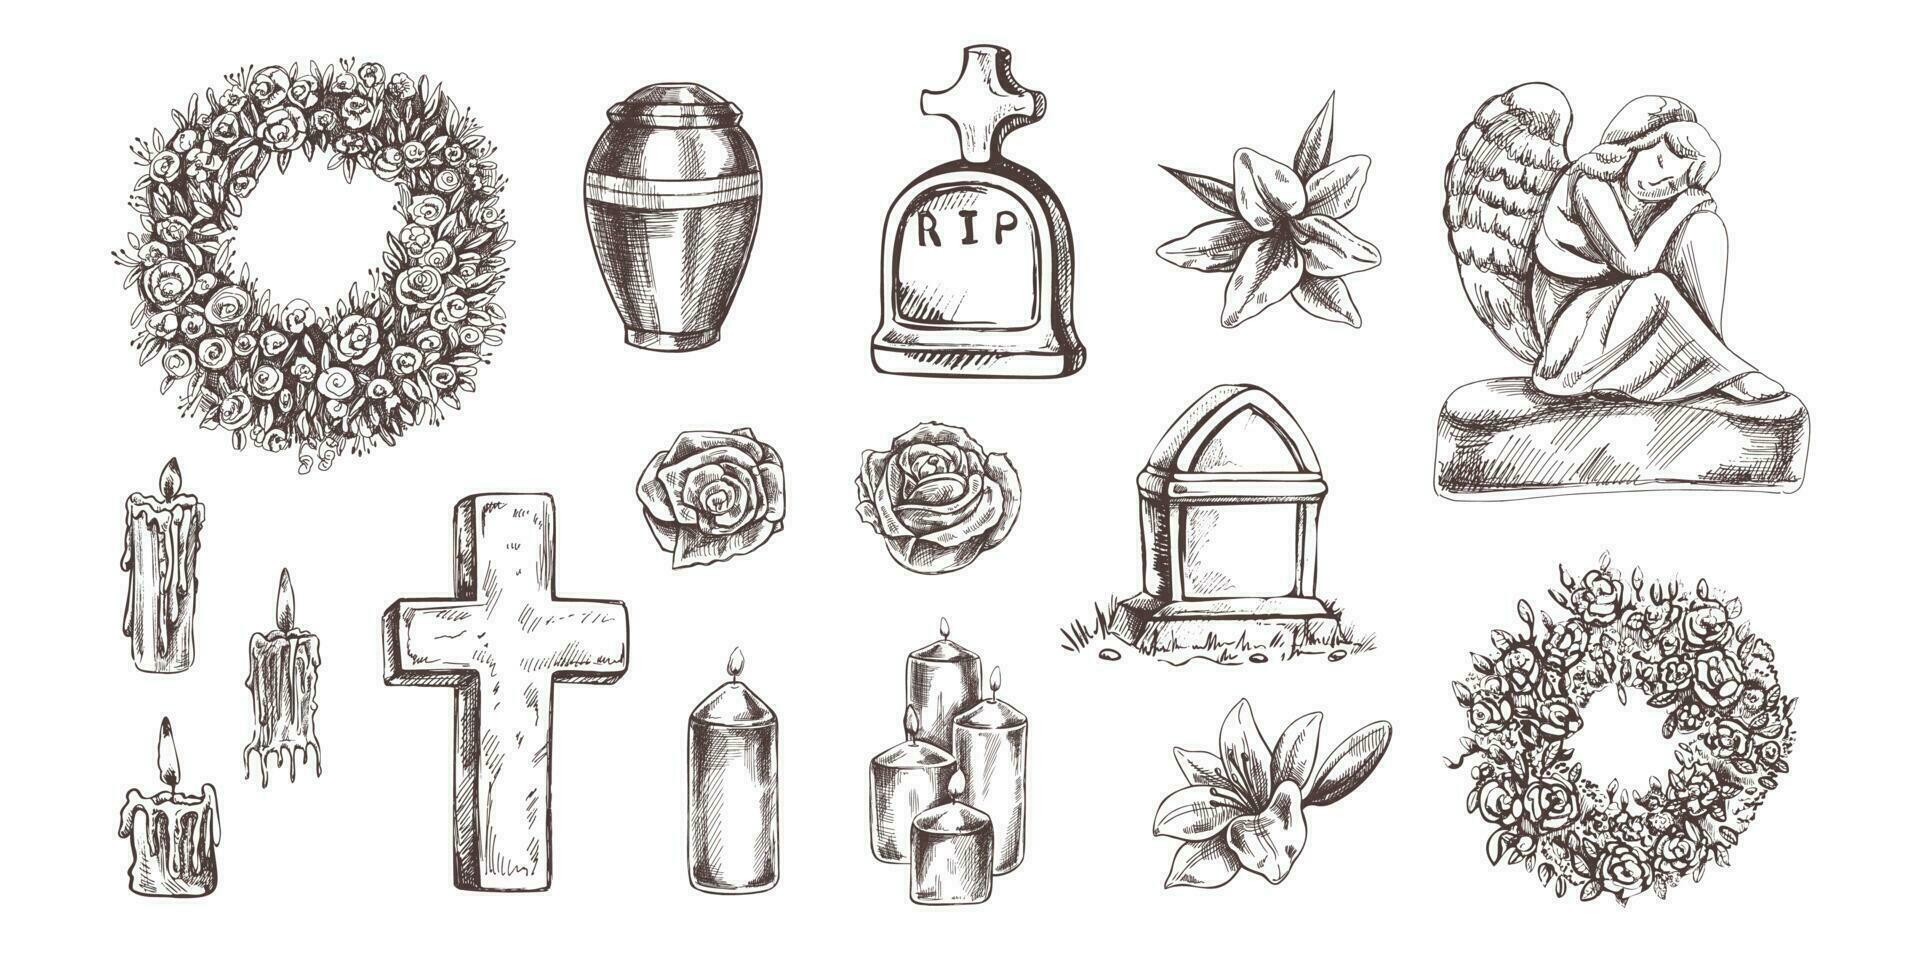 begravning service. vektor illustration. attribut och symboler av beklagande, förlust, död, sorg och kyrkogården. skiss av årgång sten ängel, gravsten, urna, korsa, uppståndelse.